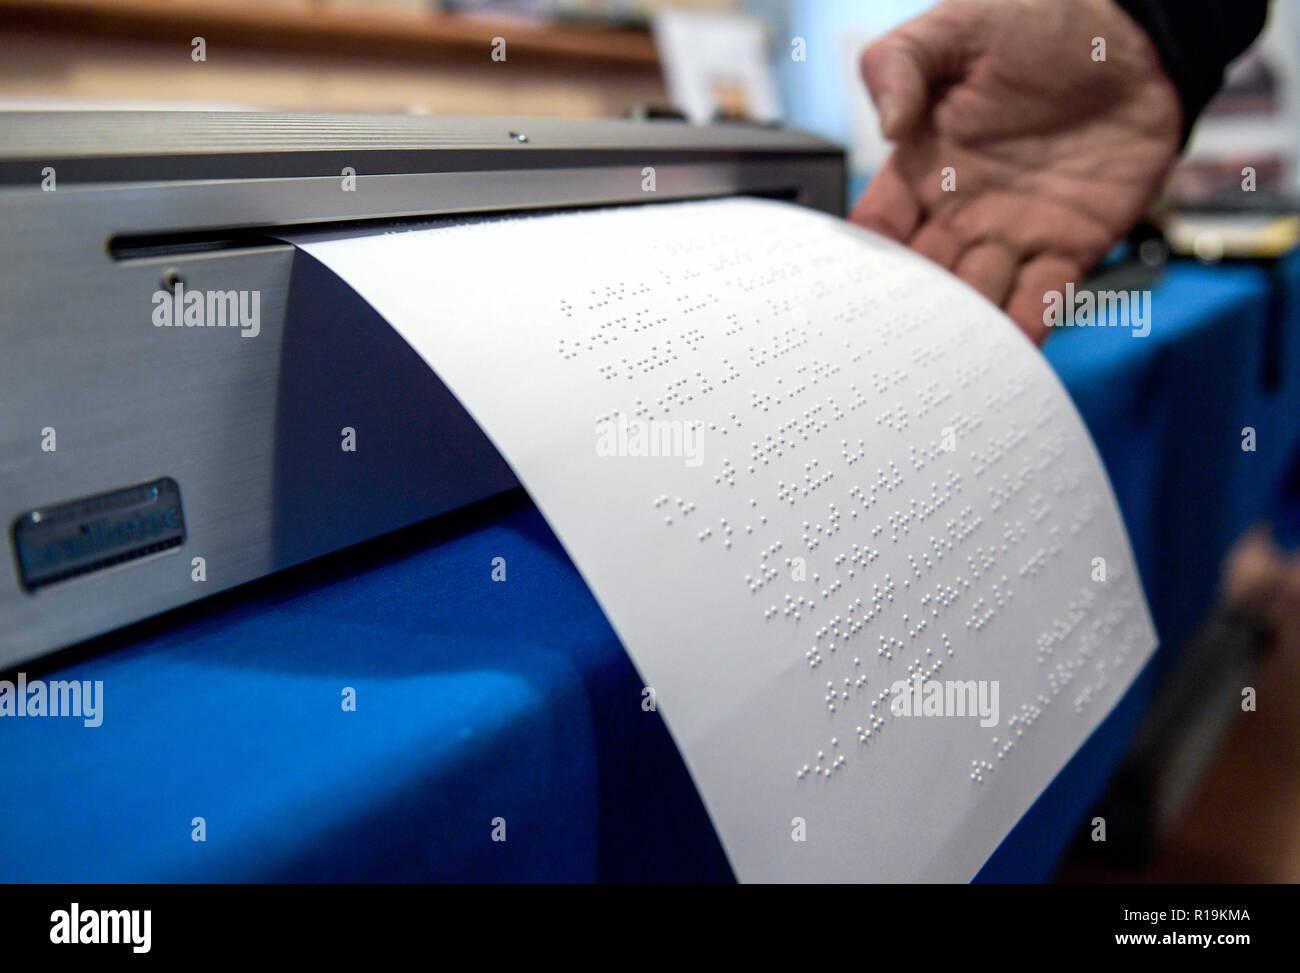 Hamburgo, Alemania. 10 Nov, 2018. Una impresora que imprime texto en  Braille se encuentra en exhibición en la feria 'Pandblick' para personas  con discapacidad visual en el centro de Louis Braille. La